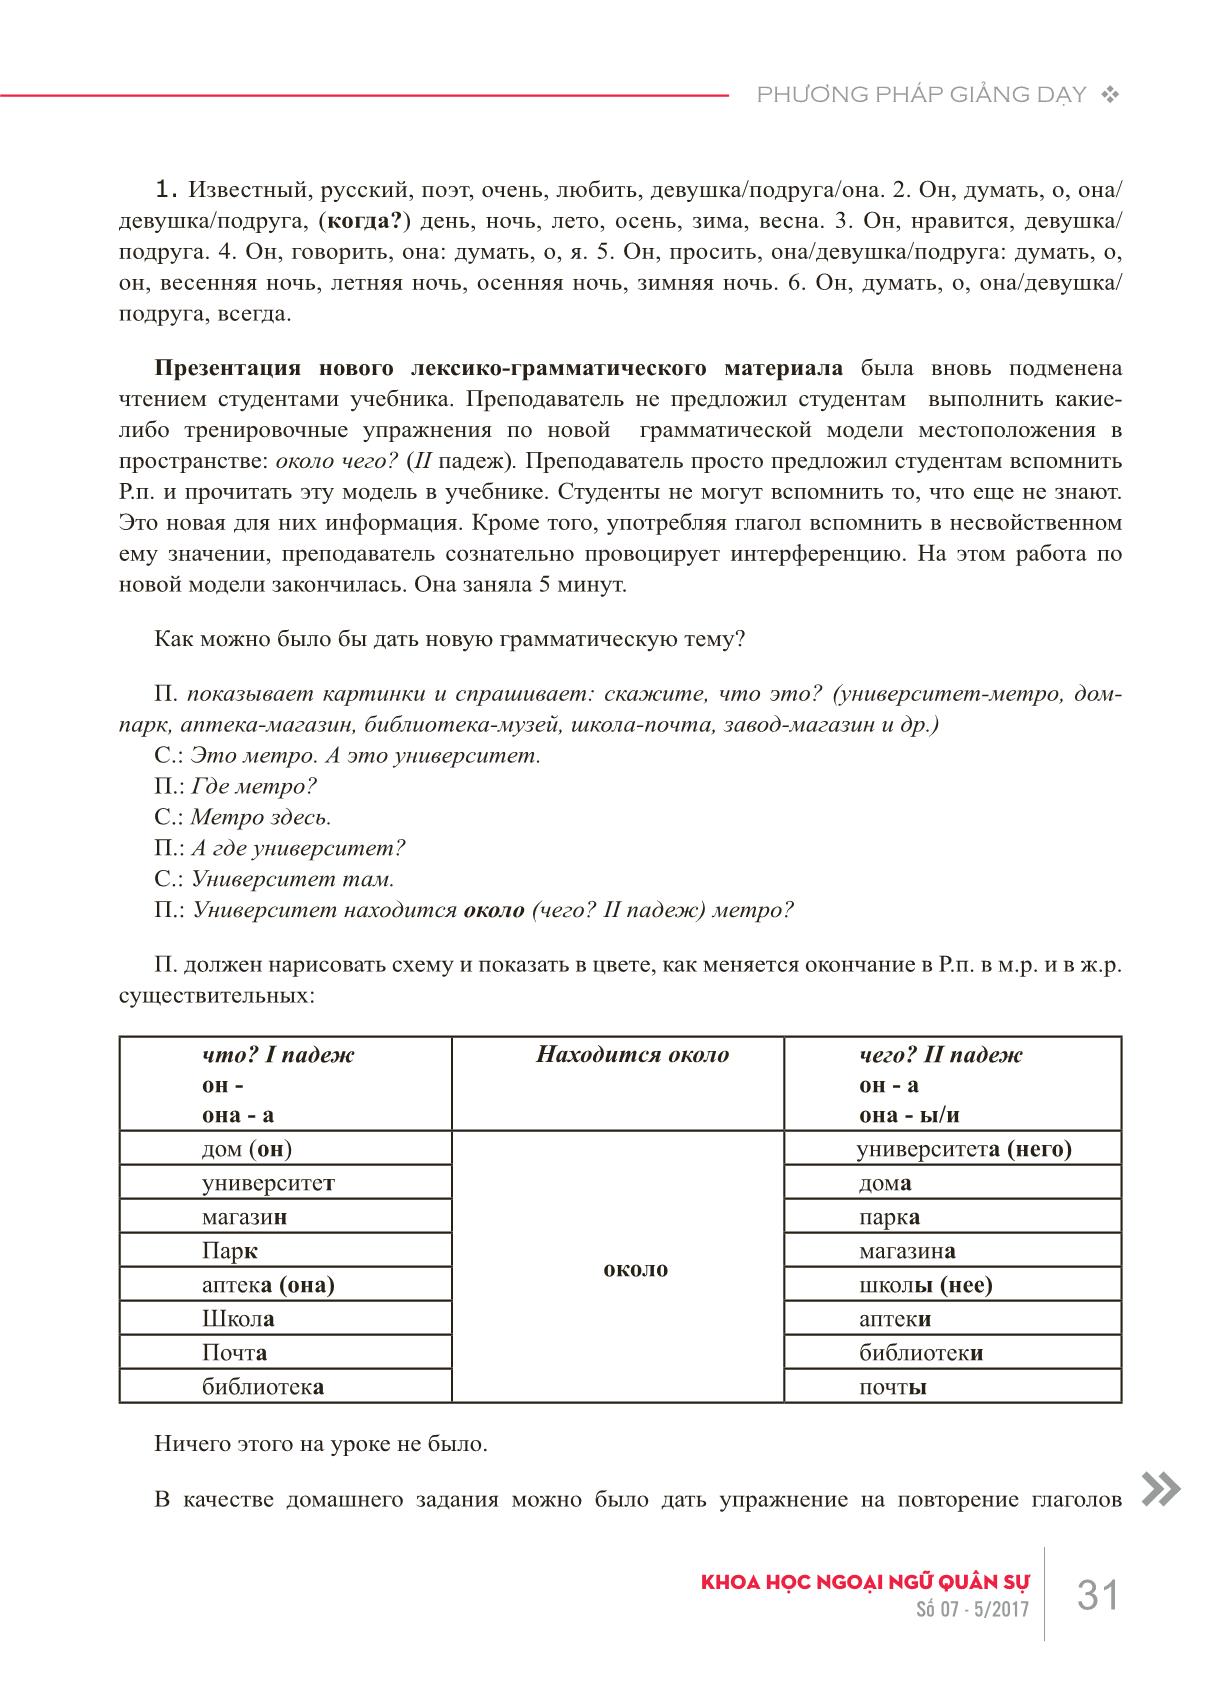 Các lỗi về phương pháp giảng dạy khi xử lý văn bản trong giờ dạy tiếng Nga như một ngoại ngữ trang 6